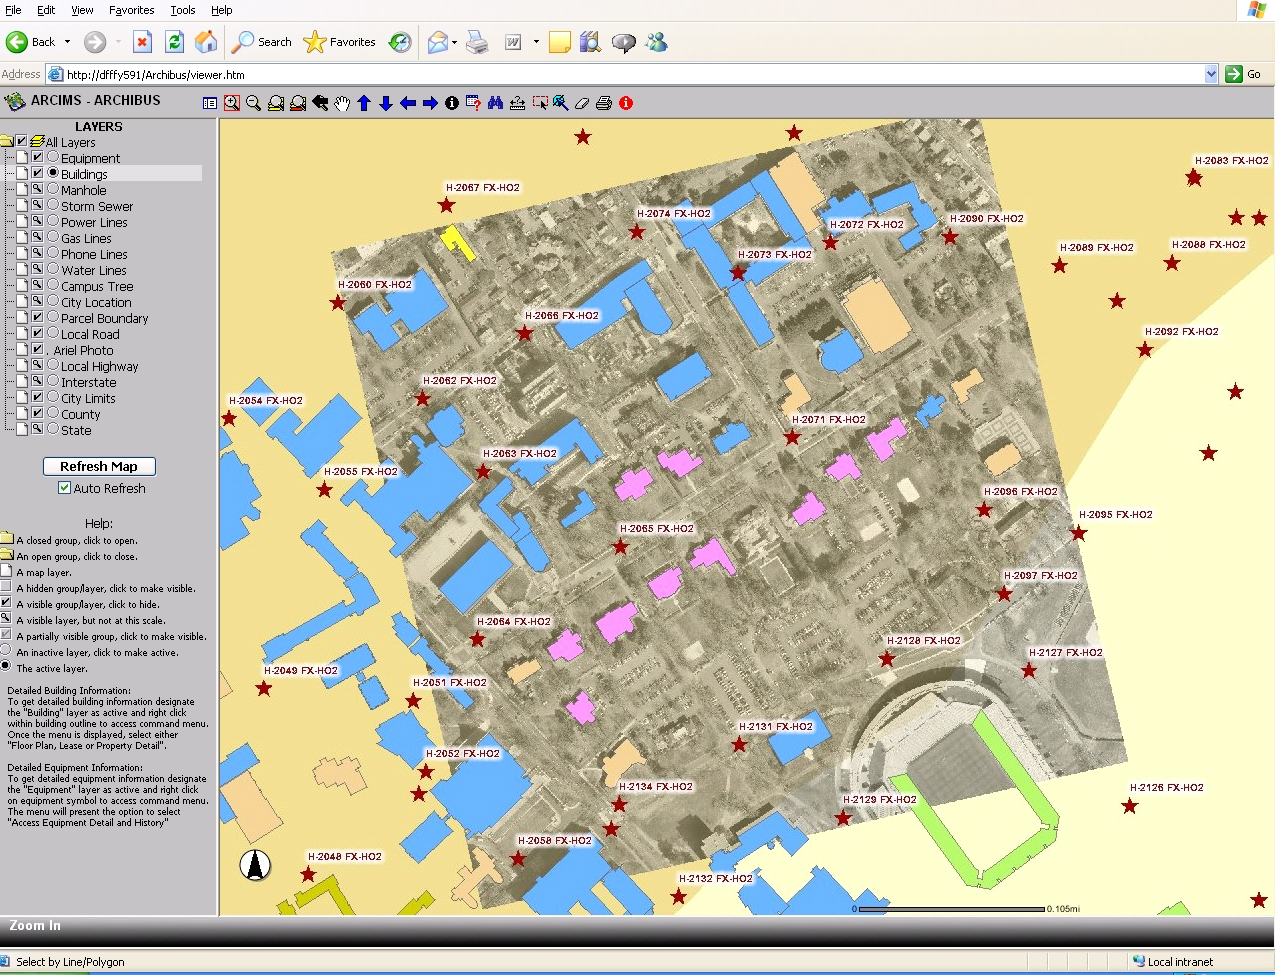 Перевод концепции модели данных ESRI внутреннего пространства зданий (BISDM) - 3